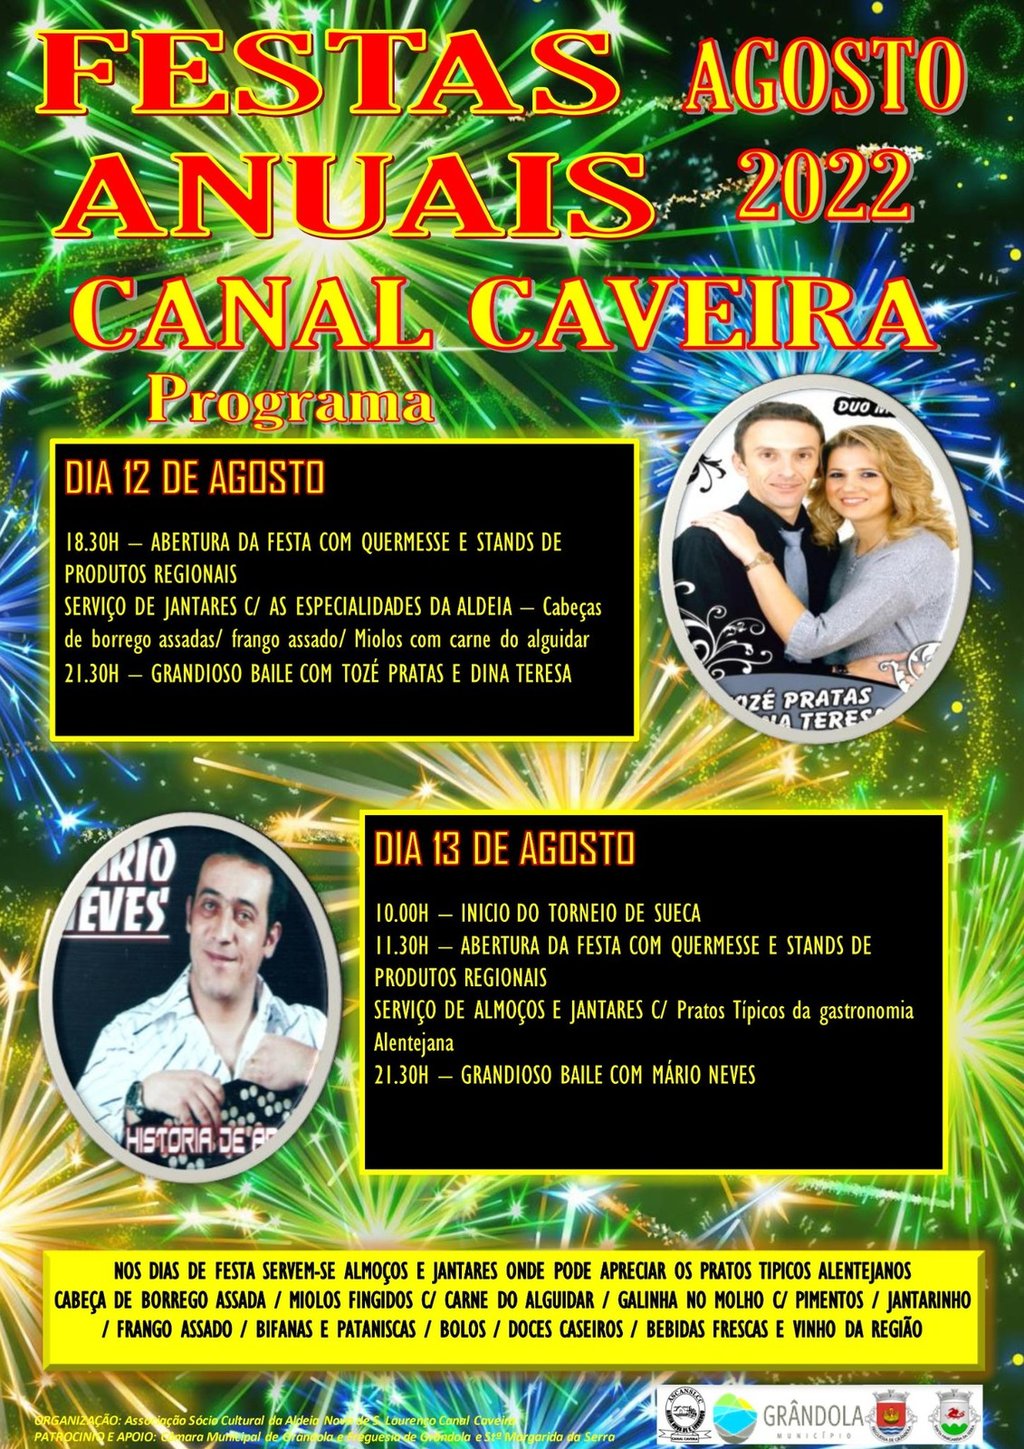 Festas Anuais | Canal Caveira